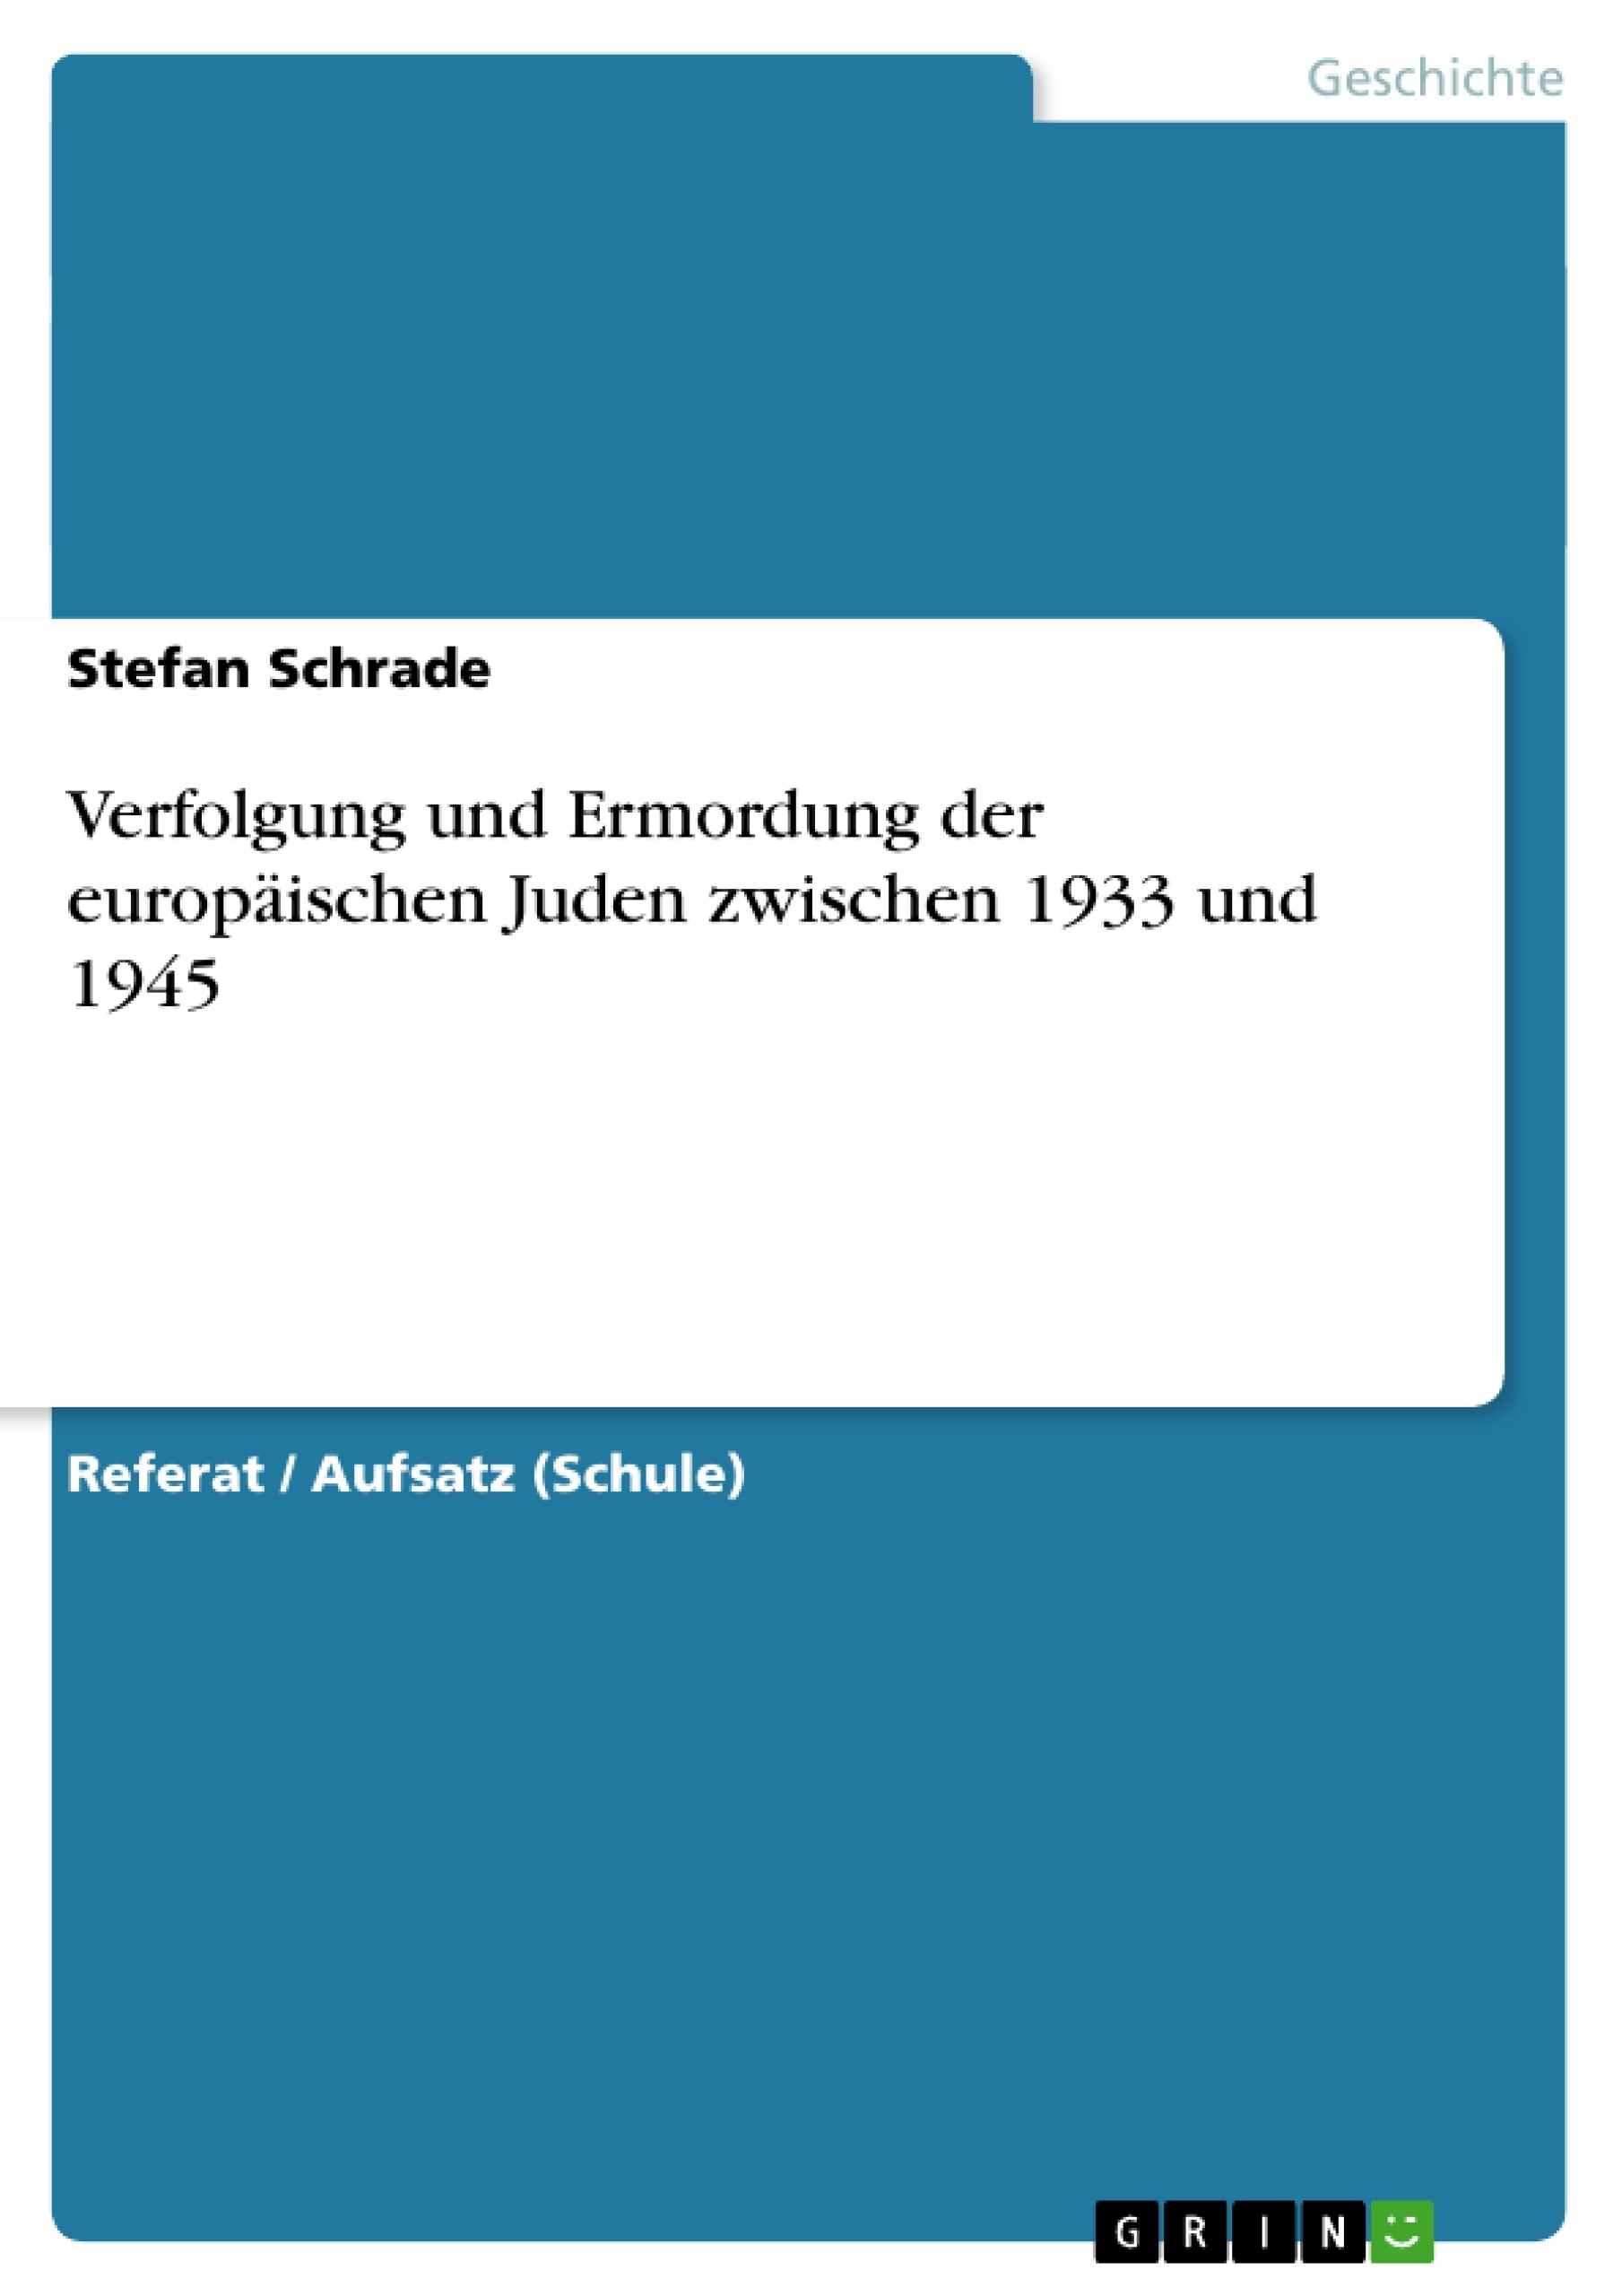 Title: Verfolgung und Ermordung der europäischen Juden zwischen 1933 und 1945